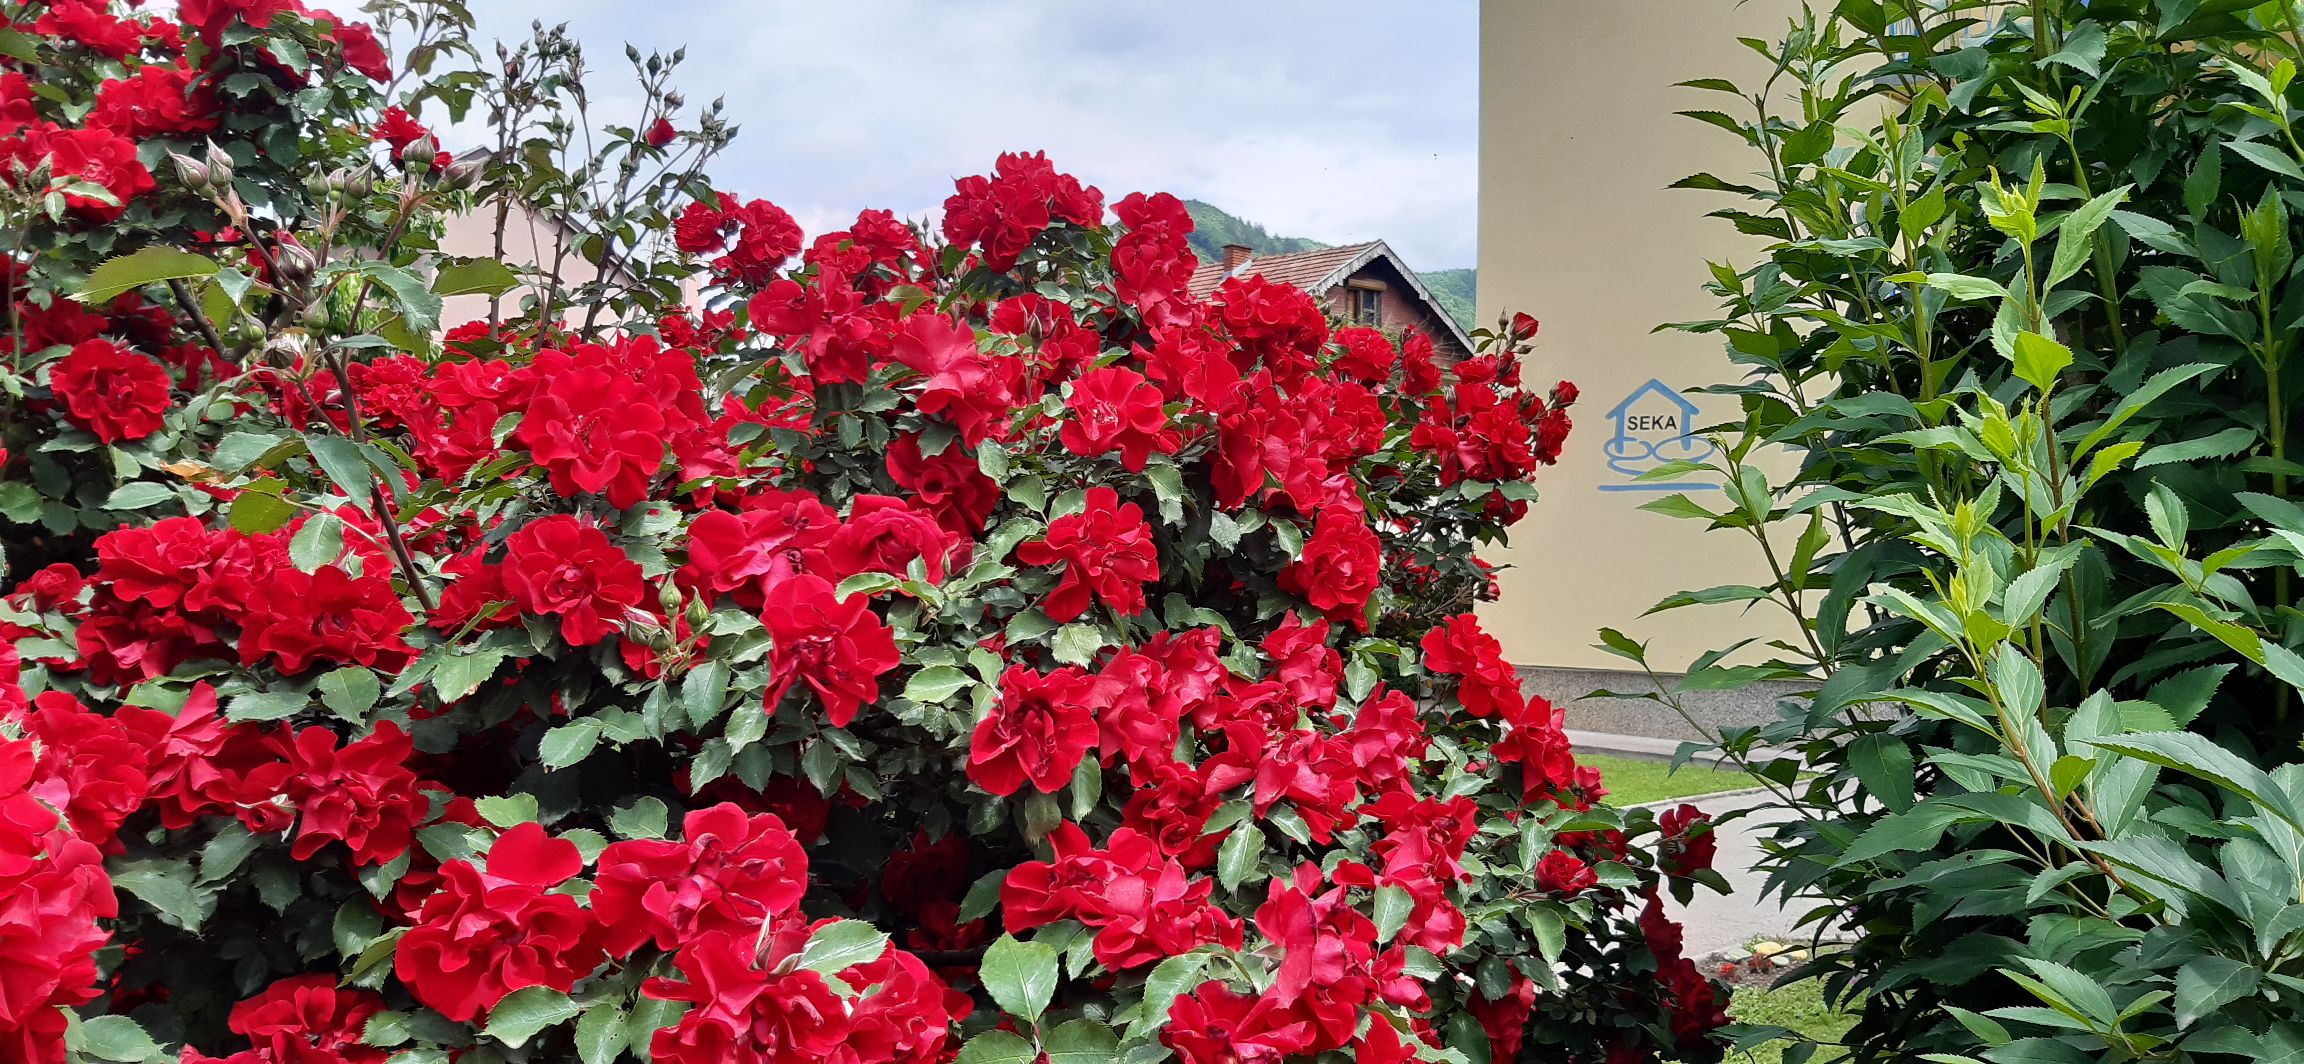 Kuća SEKA Goražde, u zagrljaju majskih ruža…